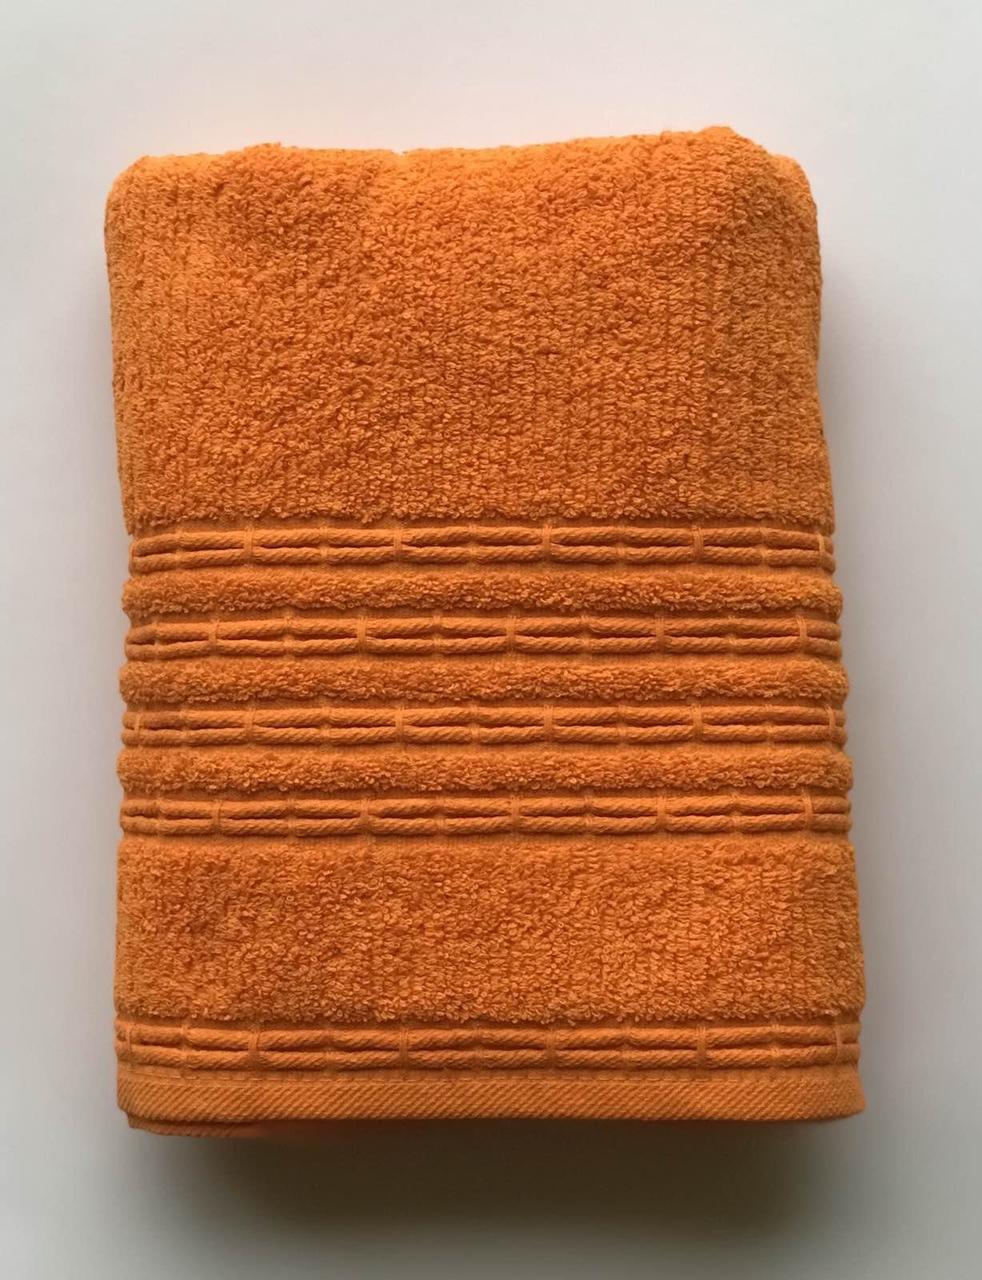 Золотая полотенца. Полотенце Gold Weave пл-1801-03978. Полотенце махровое оранжевое. Стопка полотенец. Полотенце золотого цвета.